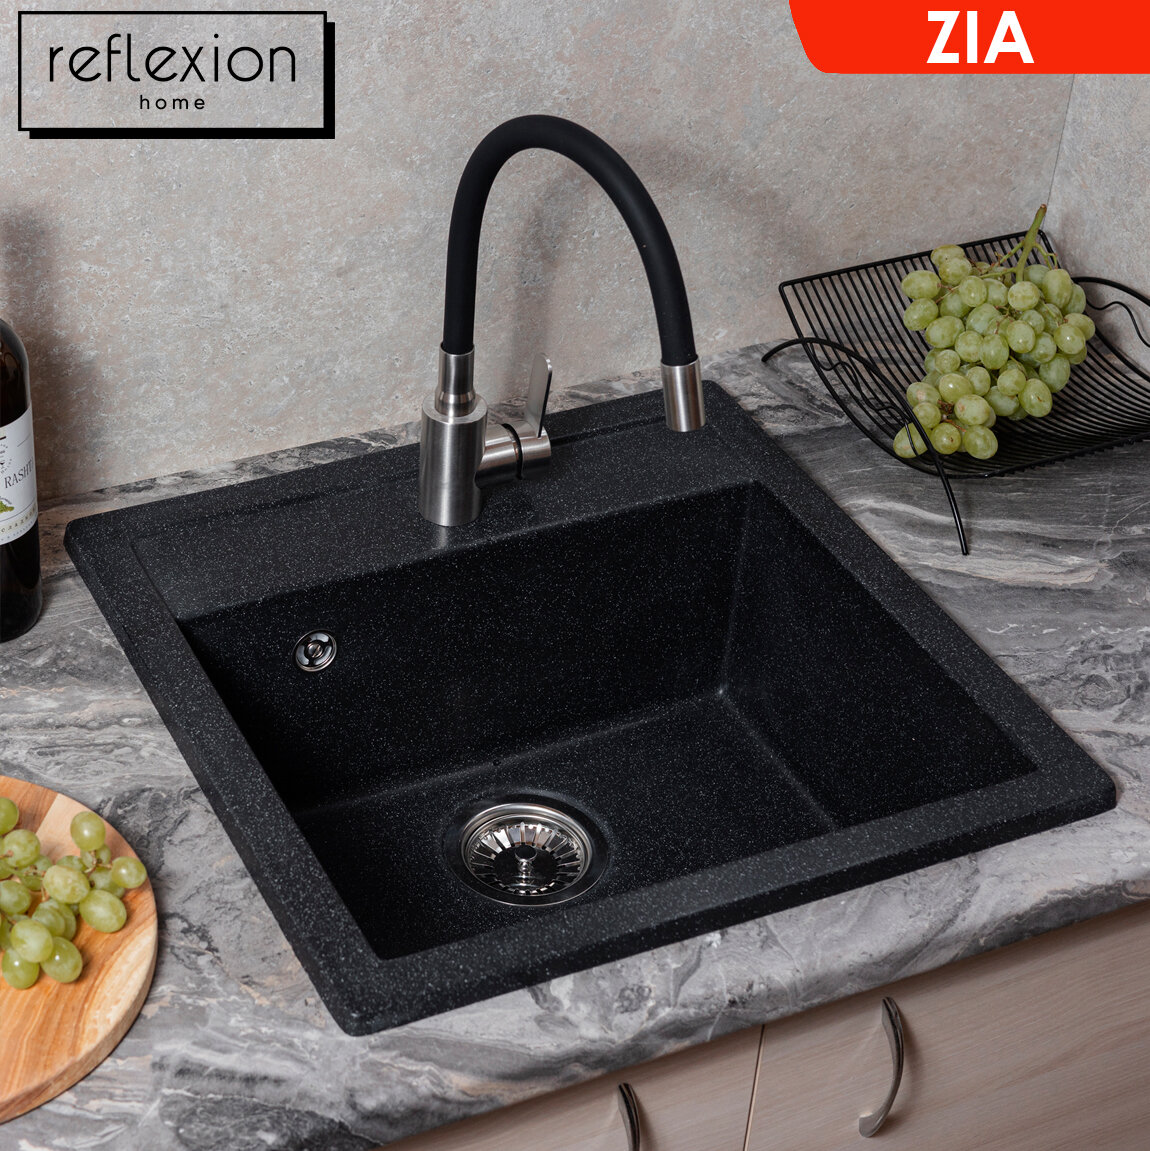 Кухонная мойка (сифон в комплекте) кварцевая врезная прямоугольная 51х50,5 см Reflexion Zia RX1251СL, цвет - уголь